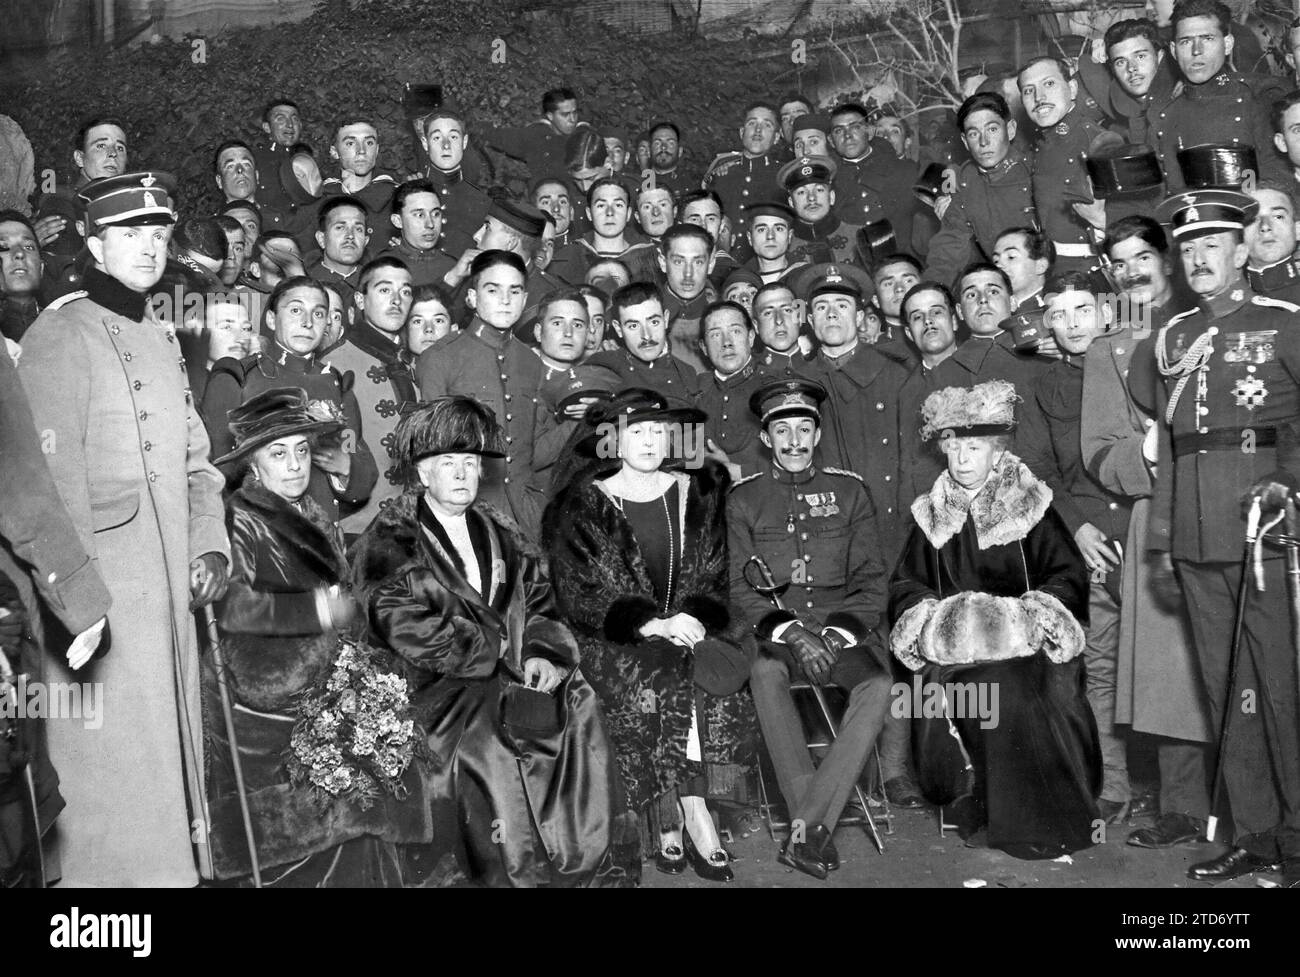 12/31/1921. Madrid. La famiglia reale. La famiglia reale durante la loro visita alla casa del soldato. Crediti: Album / Archivo ABC / Julio Duque Foto Stock